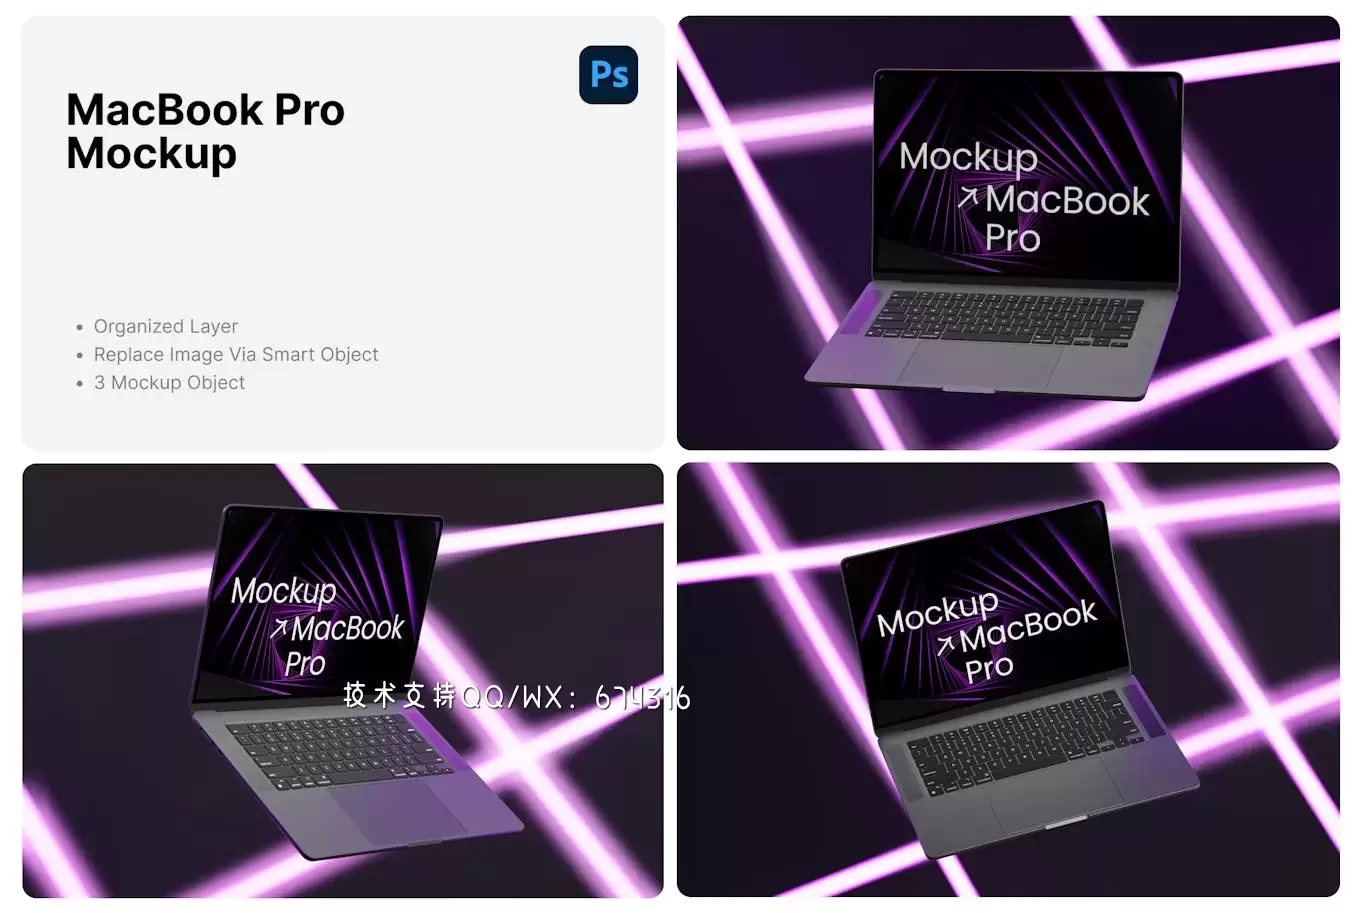 Macbook Pro 样机 (PSD,PNG)免费下载